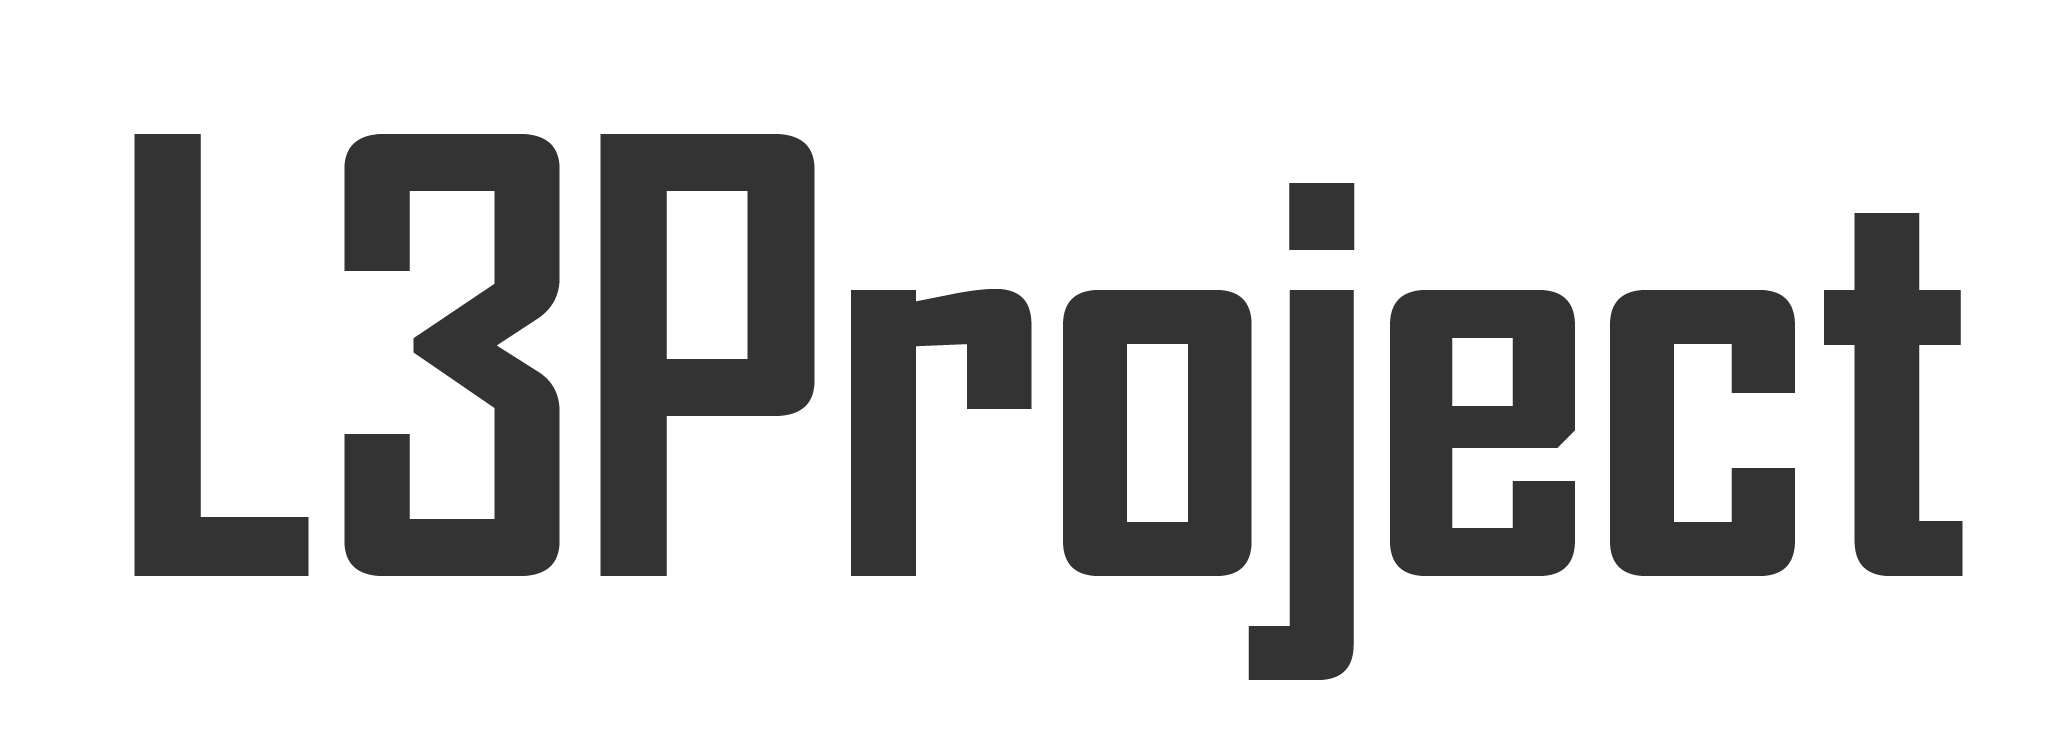 れれれP公式サイト【L3Project】